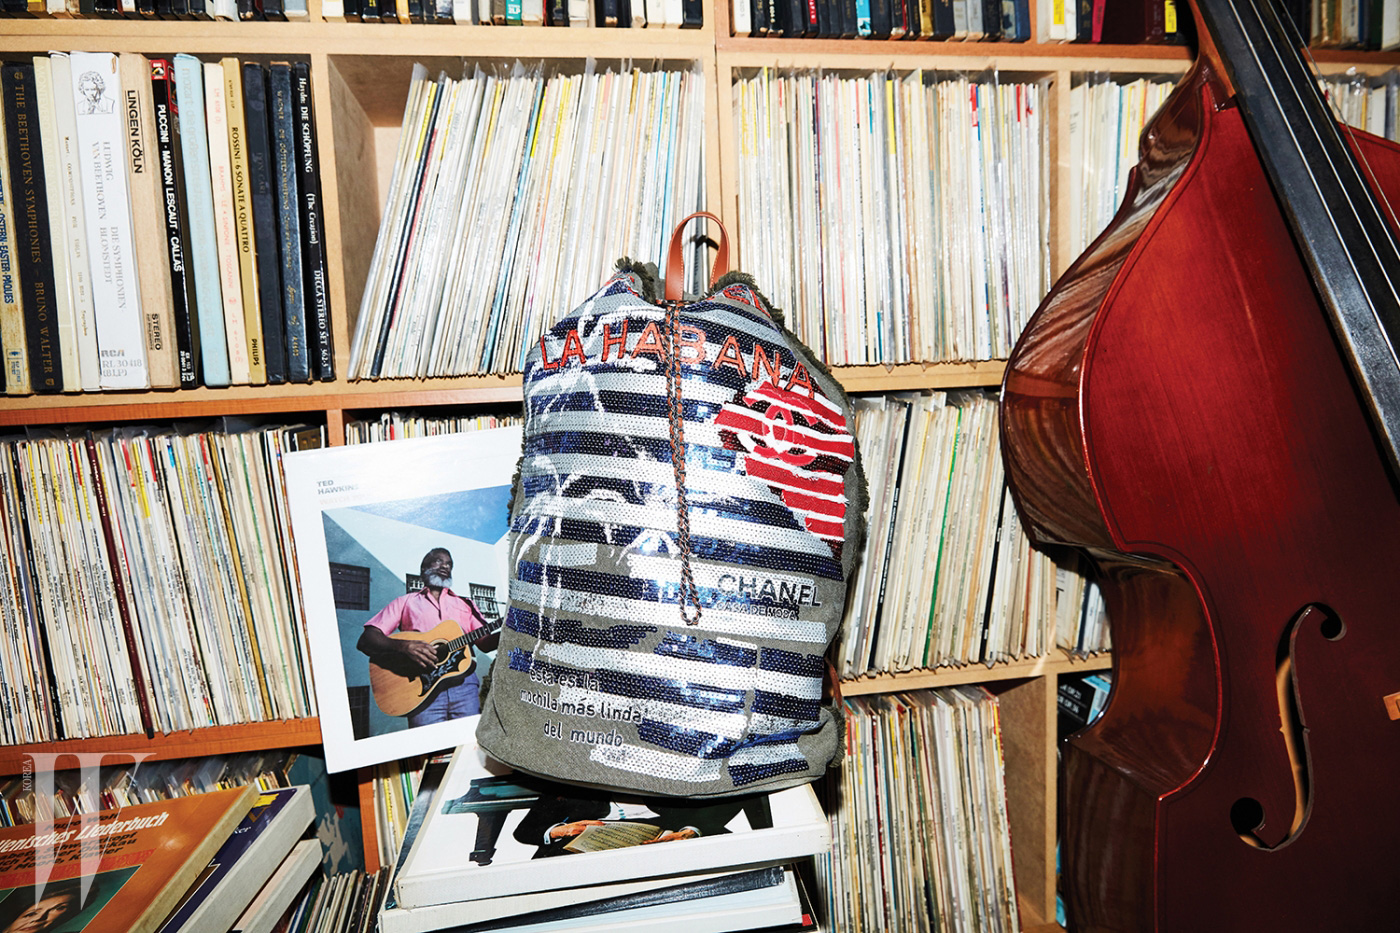 재즈 아티스트 테드 허킨스의 앨범과 함께 놓인 스팽글 장식 백팩은 샤넬 제품. 가격 미정.